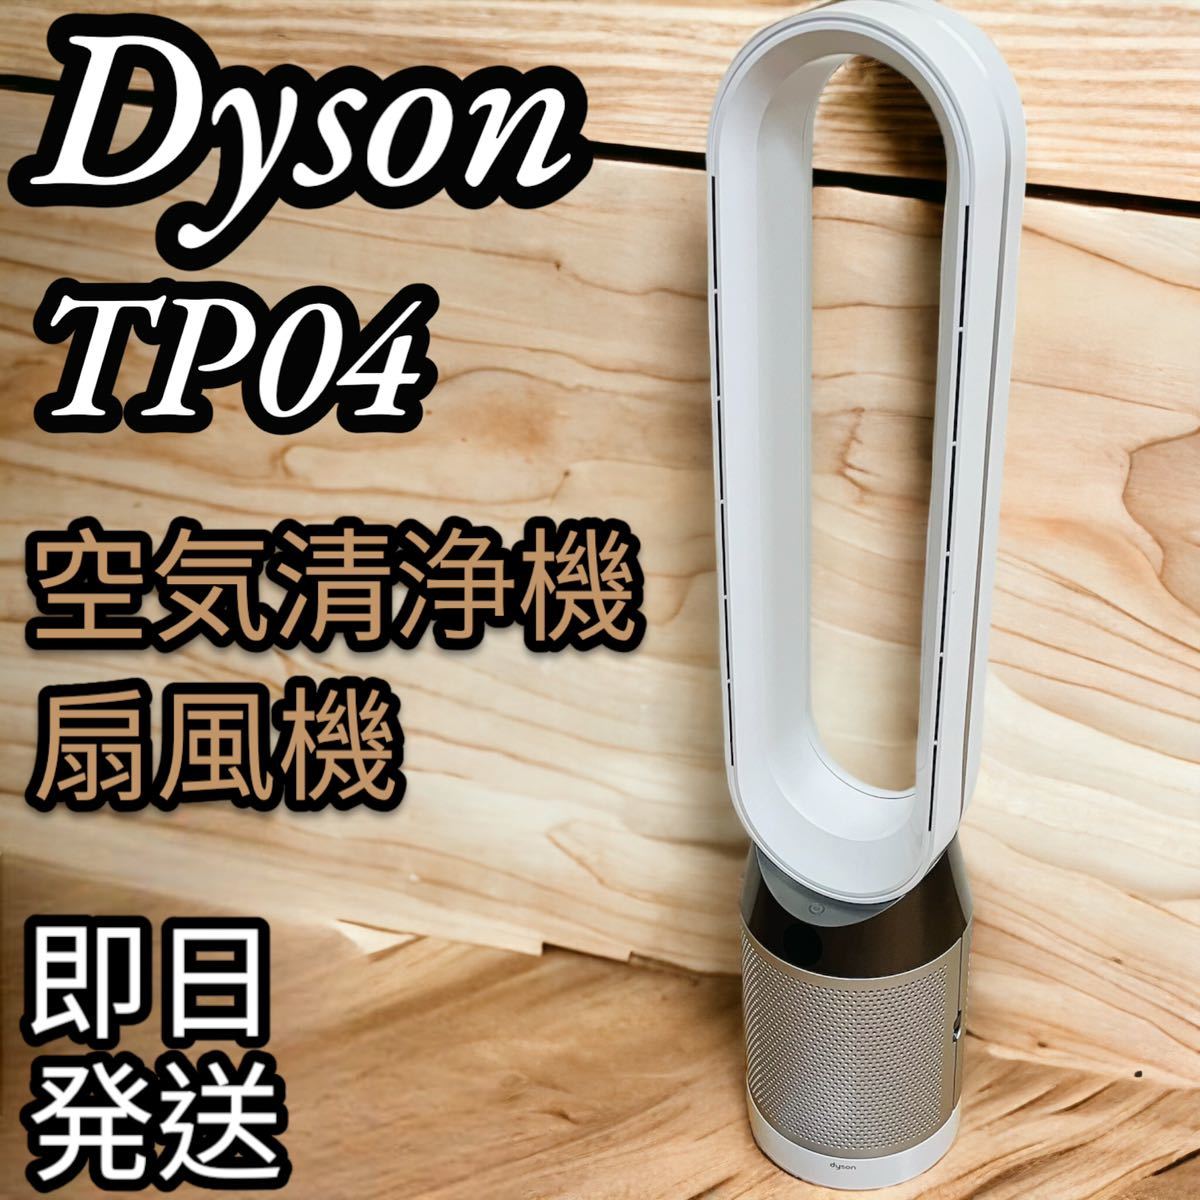 Dyson 空気清浄機能付き扇風機TP04 タワーファンピュアクール